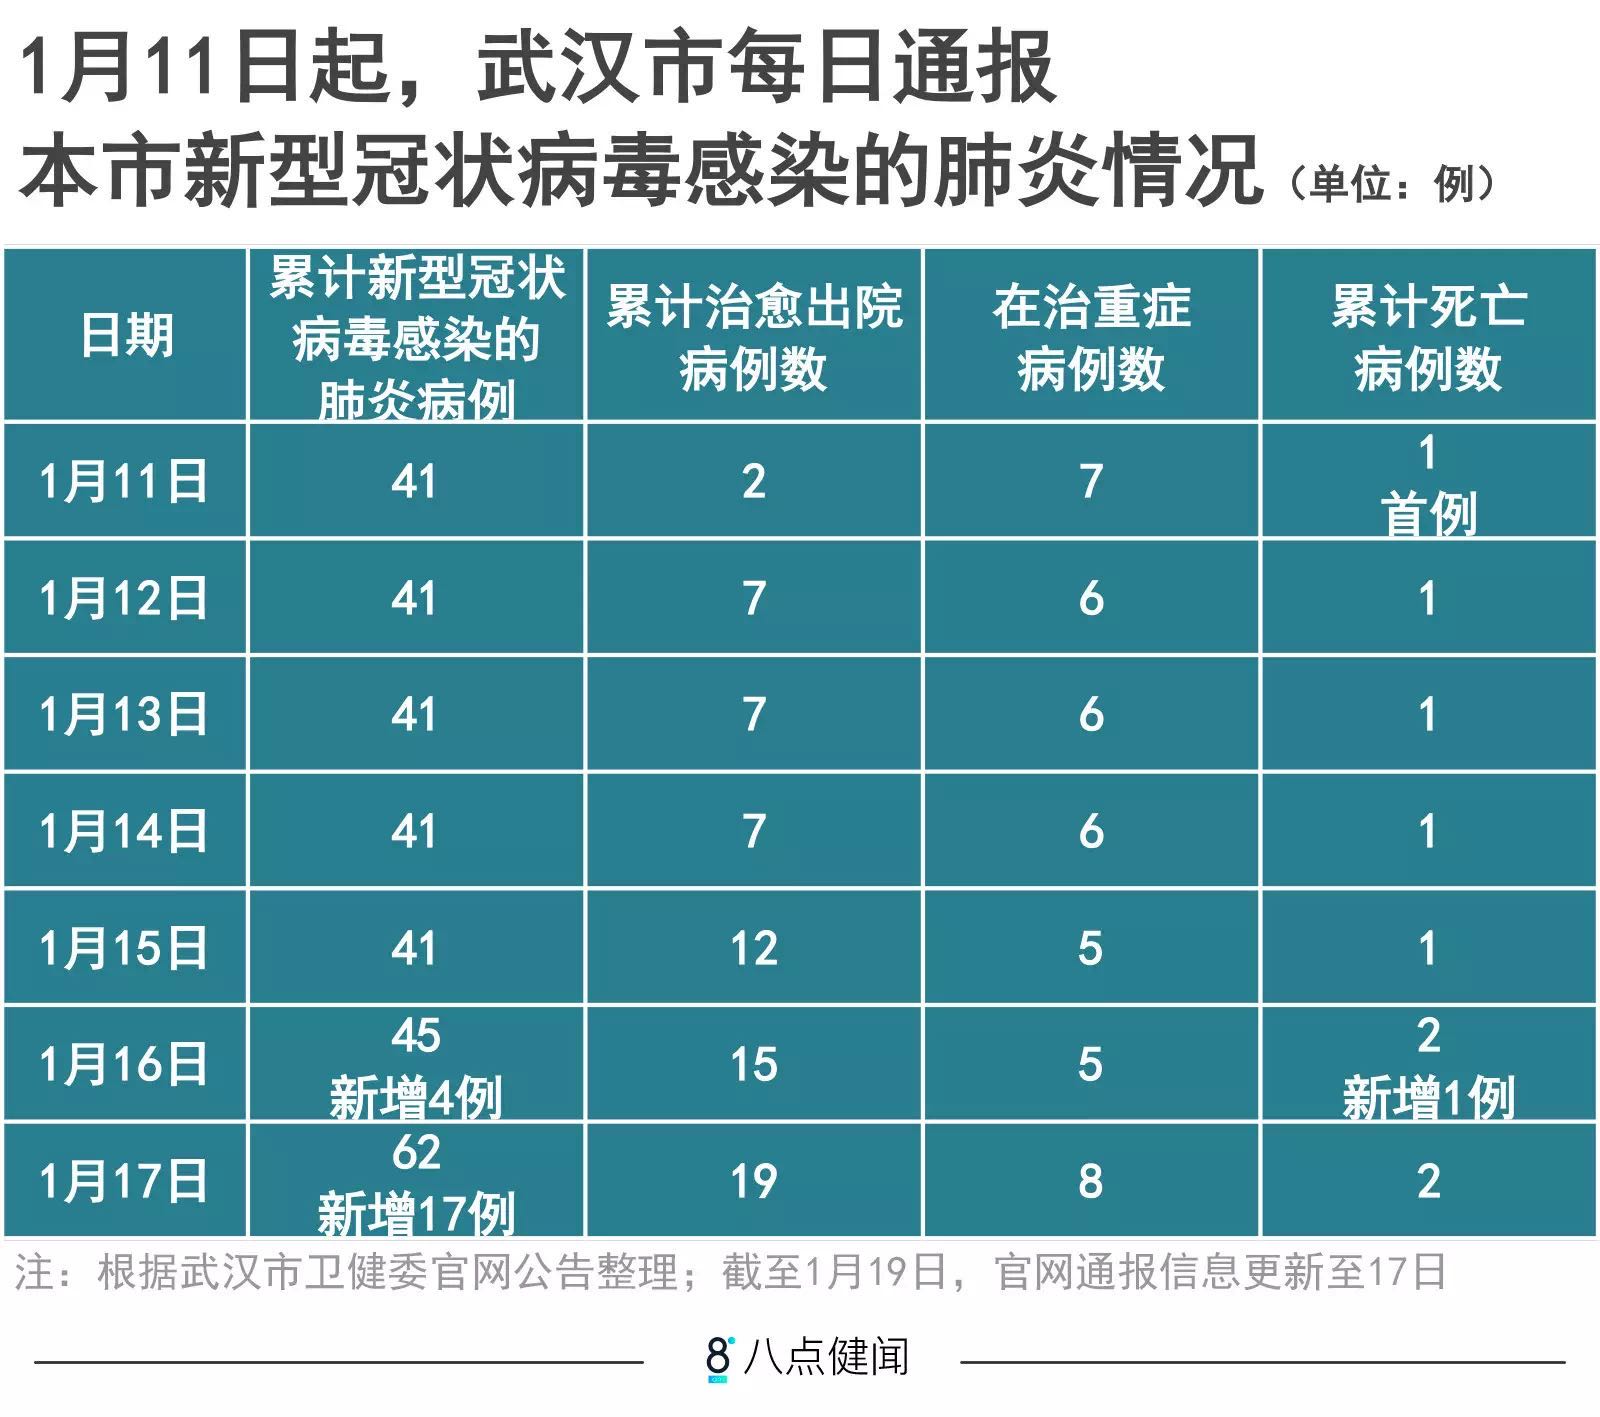 截至1月17日24时,武汉累计报告2019